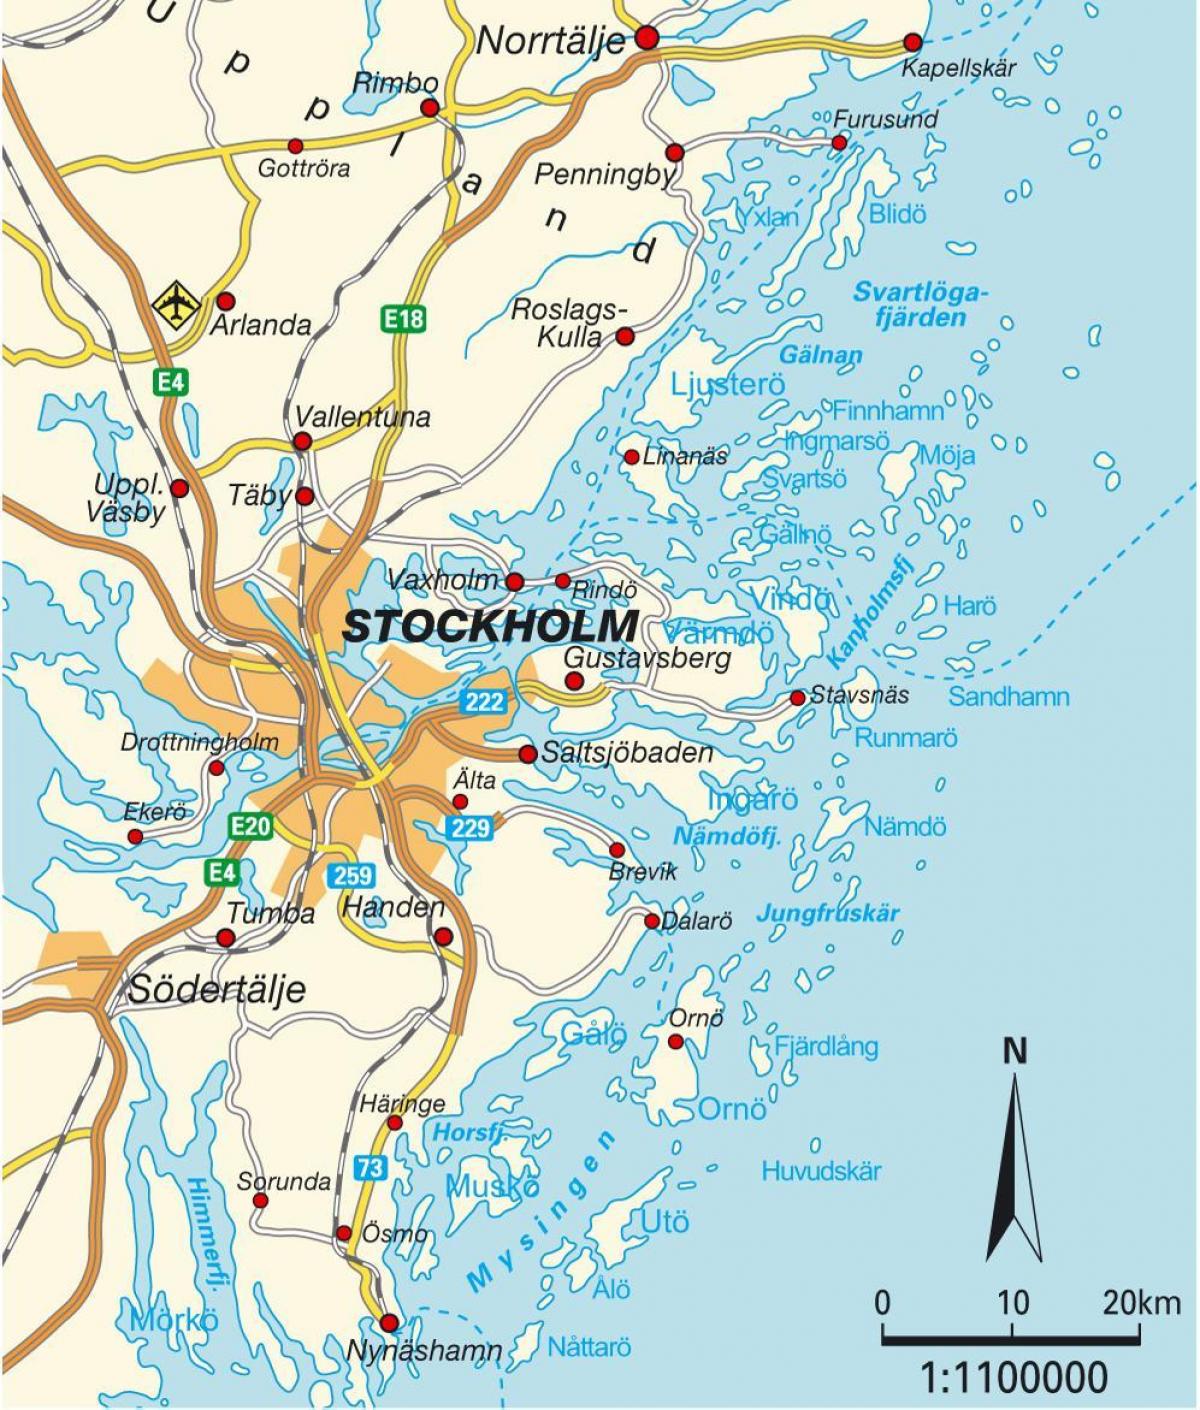 Stockholm på kartet